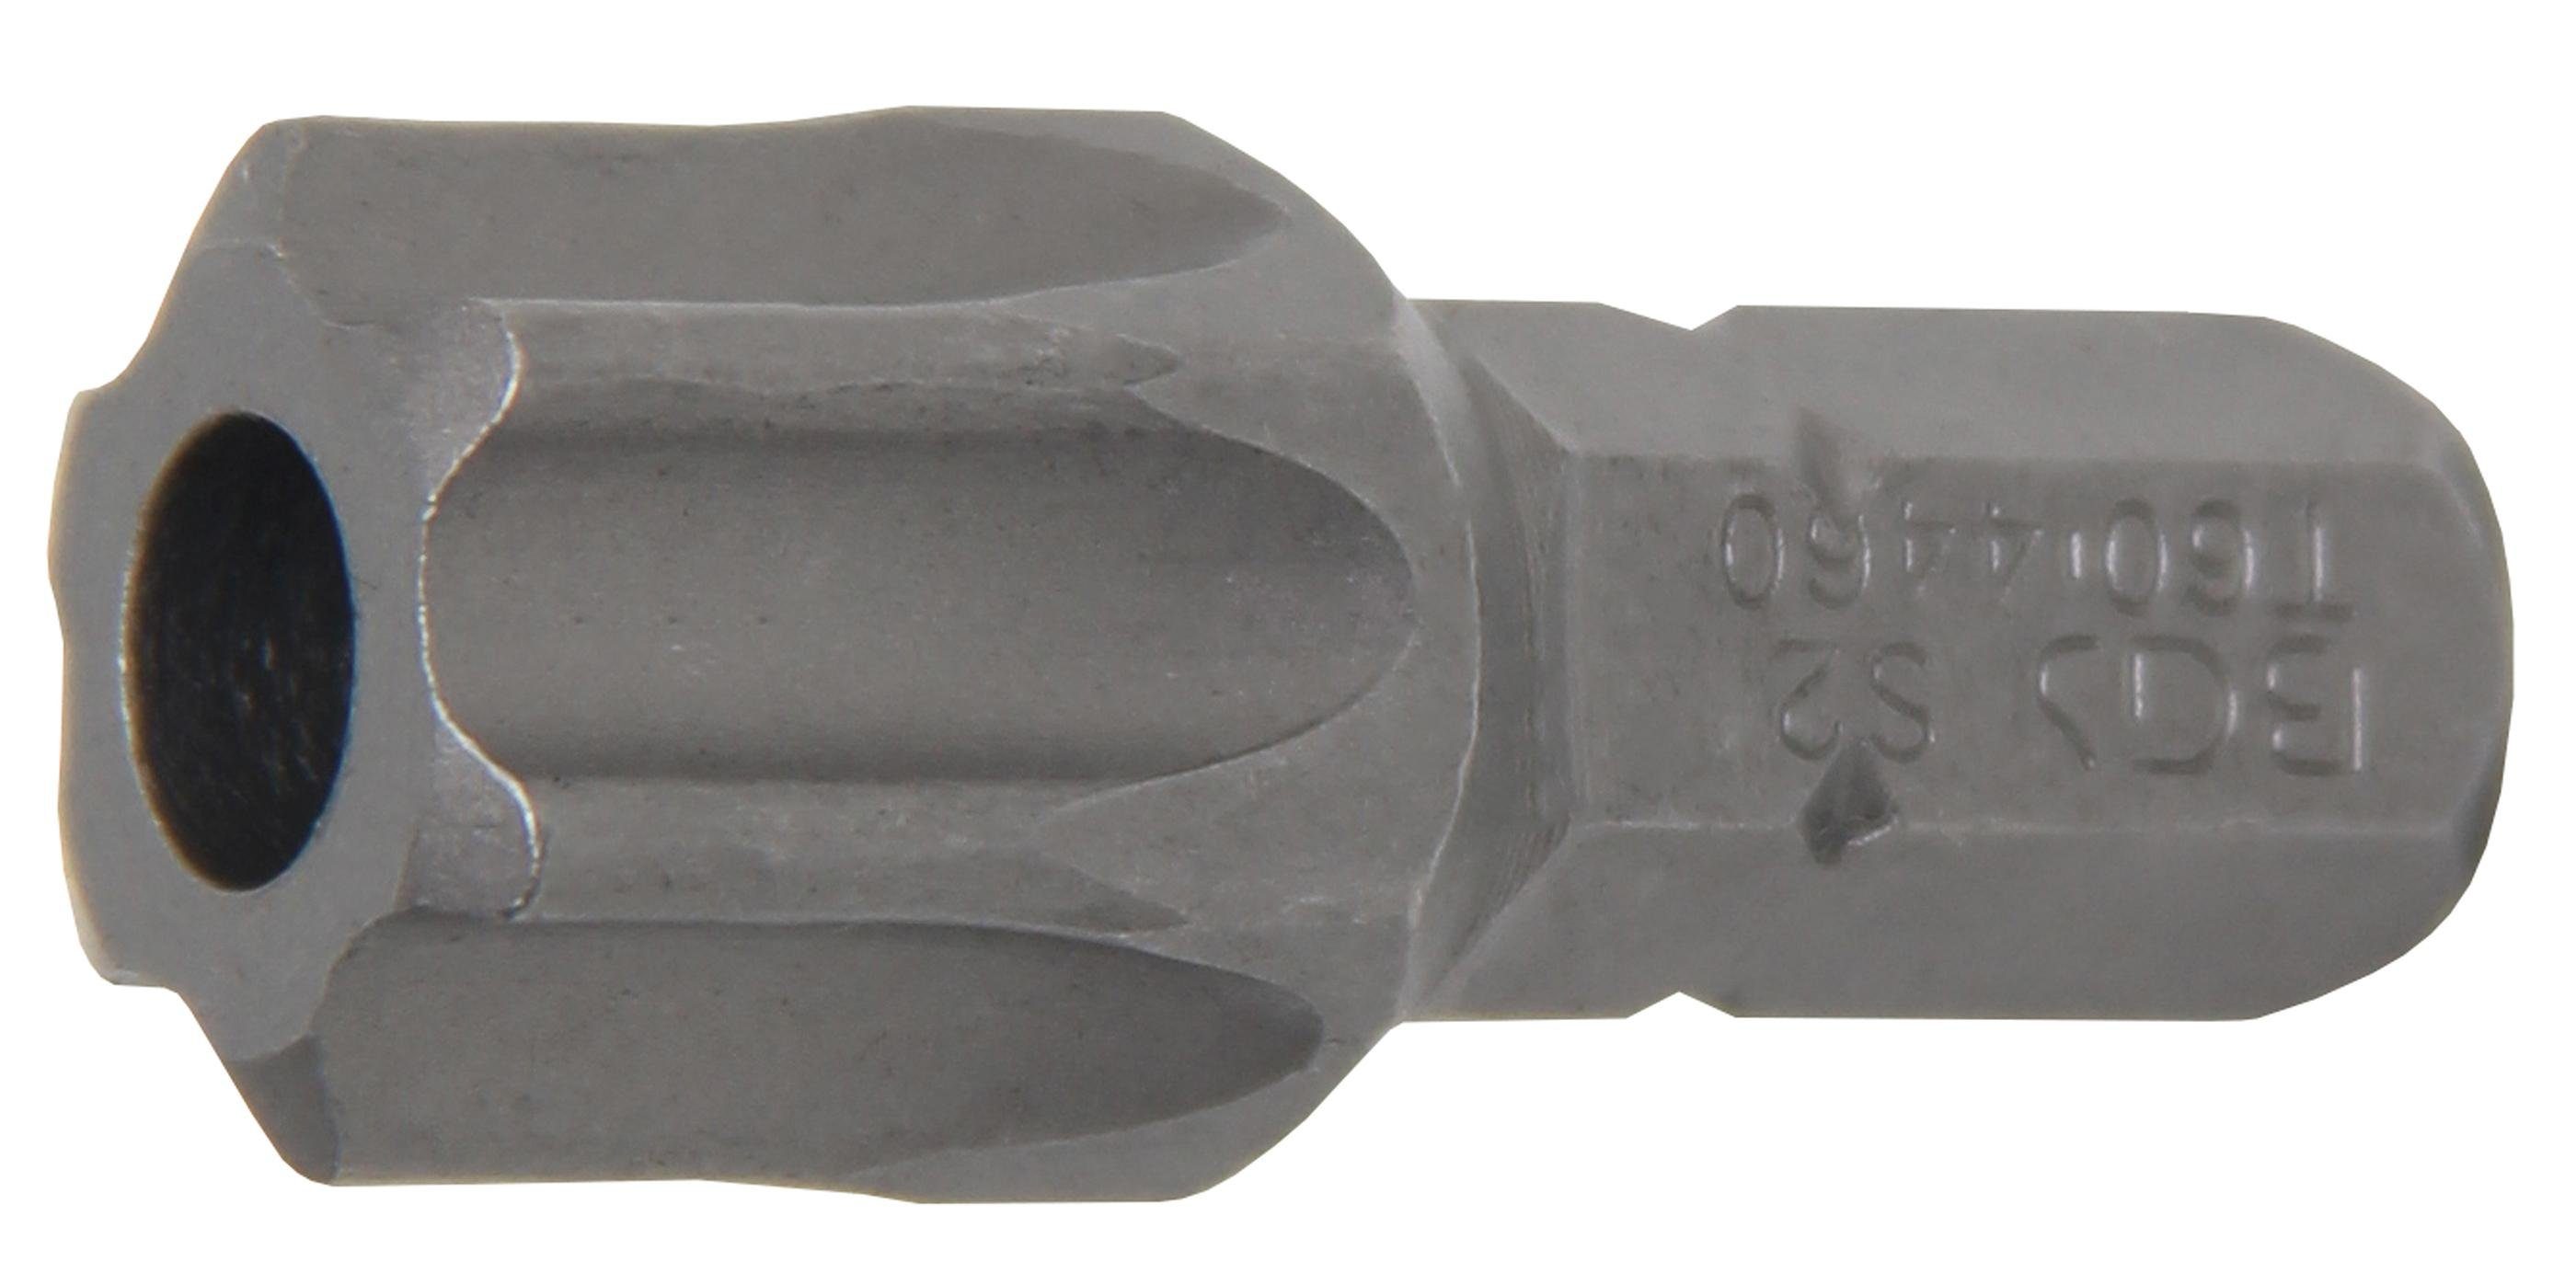 BGS technic Bit-Schraubendreher Bit, Länge 30 mm, Antrieb Außensechskant 8 mm (5/16), T-Profil (für Torx) mit Bohrung T60